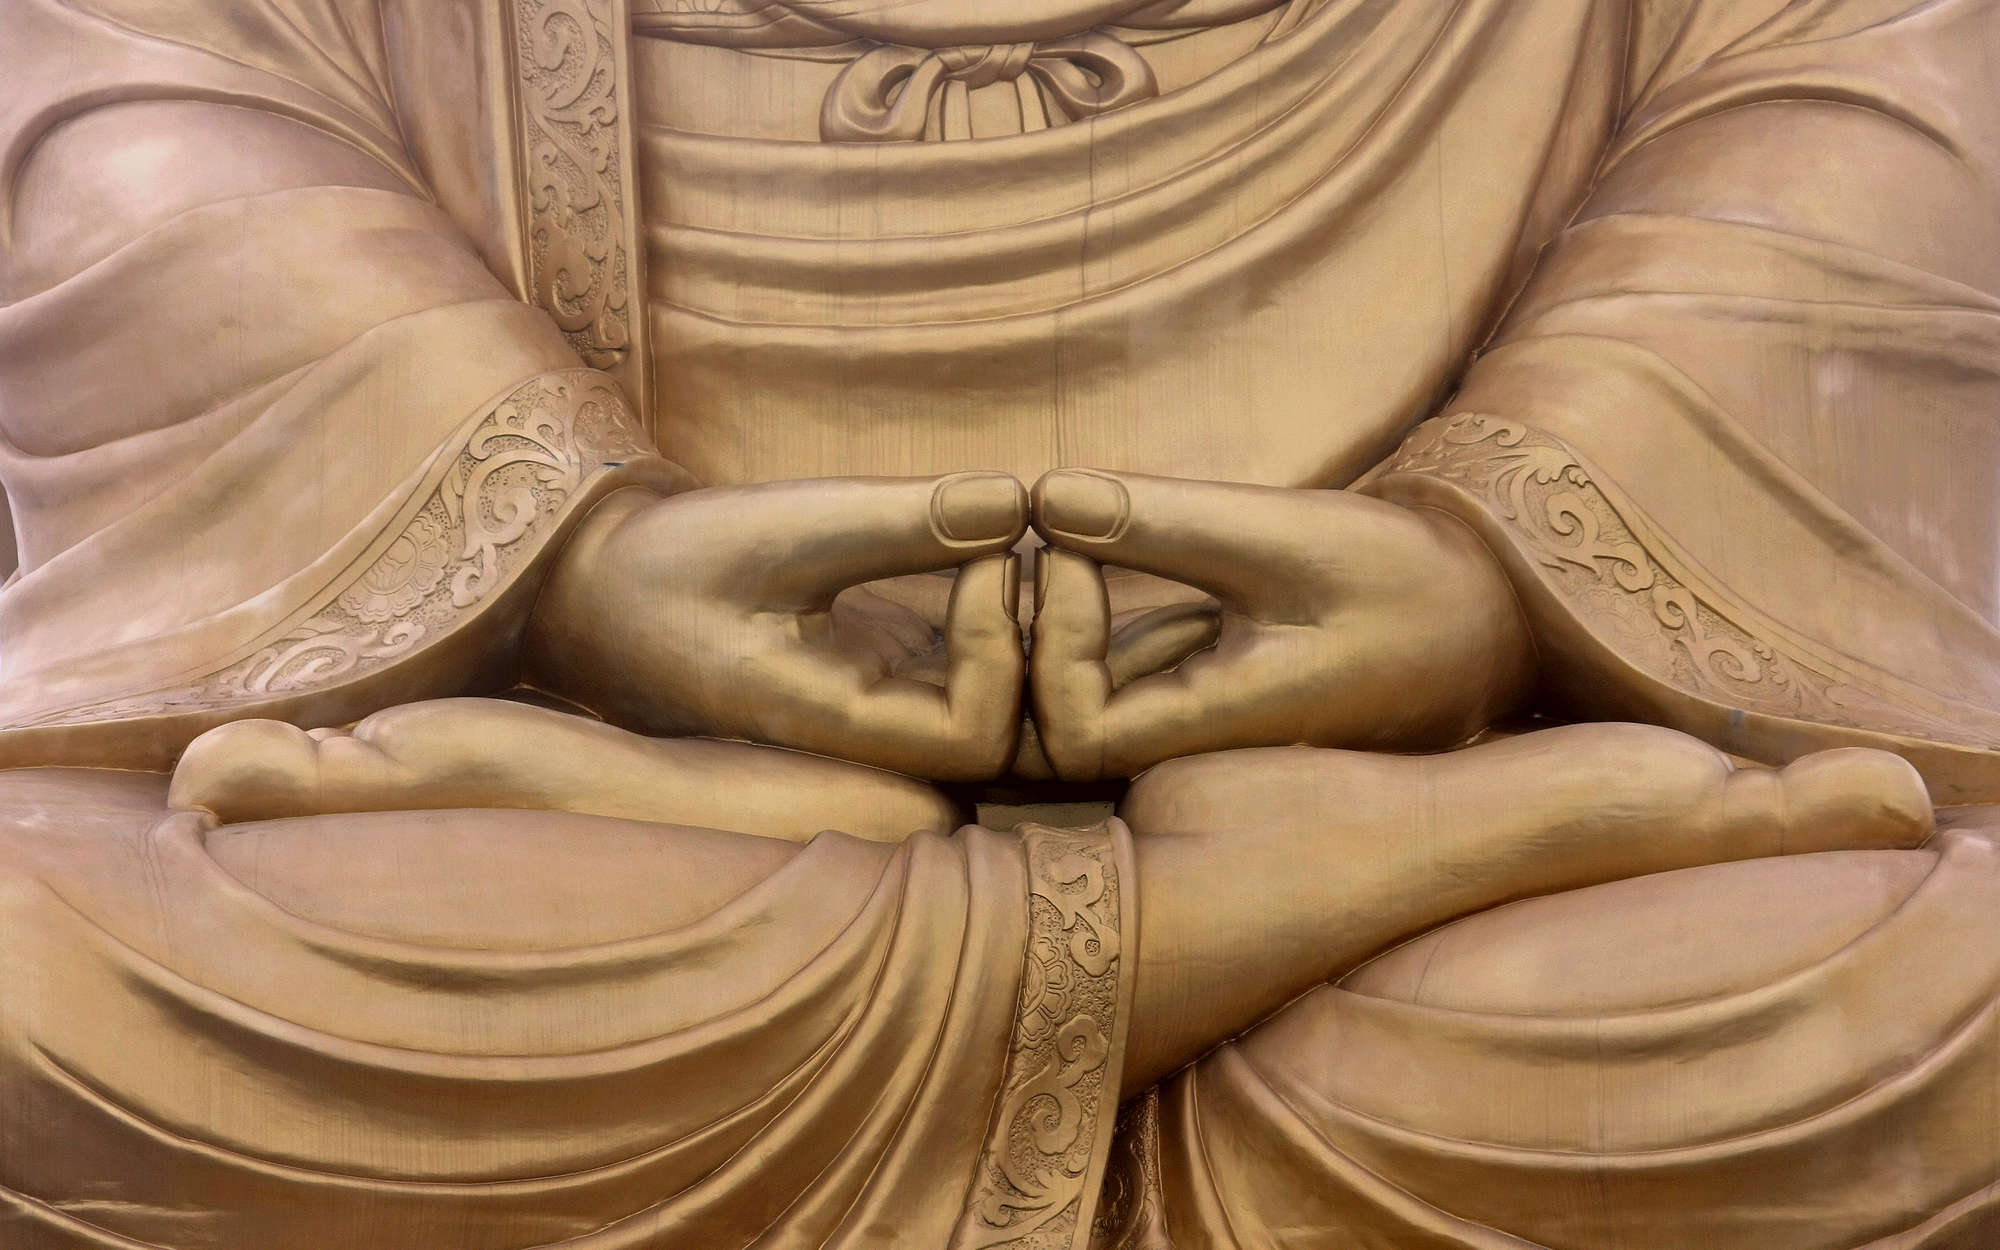             Photo wallpaper Religion Buddha Statue - Premium Smooth Non-woven
        